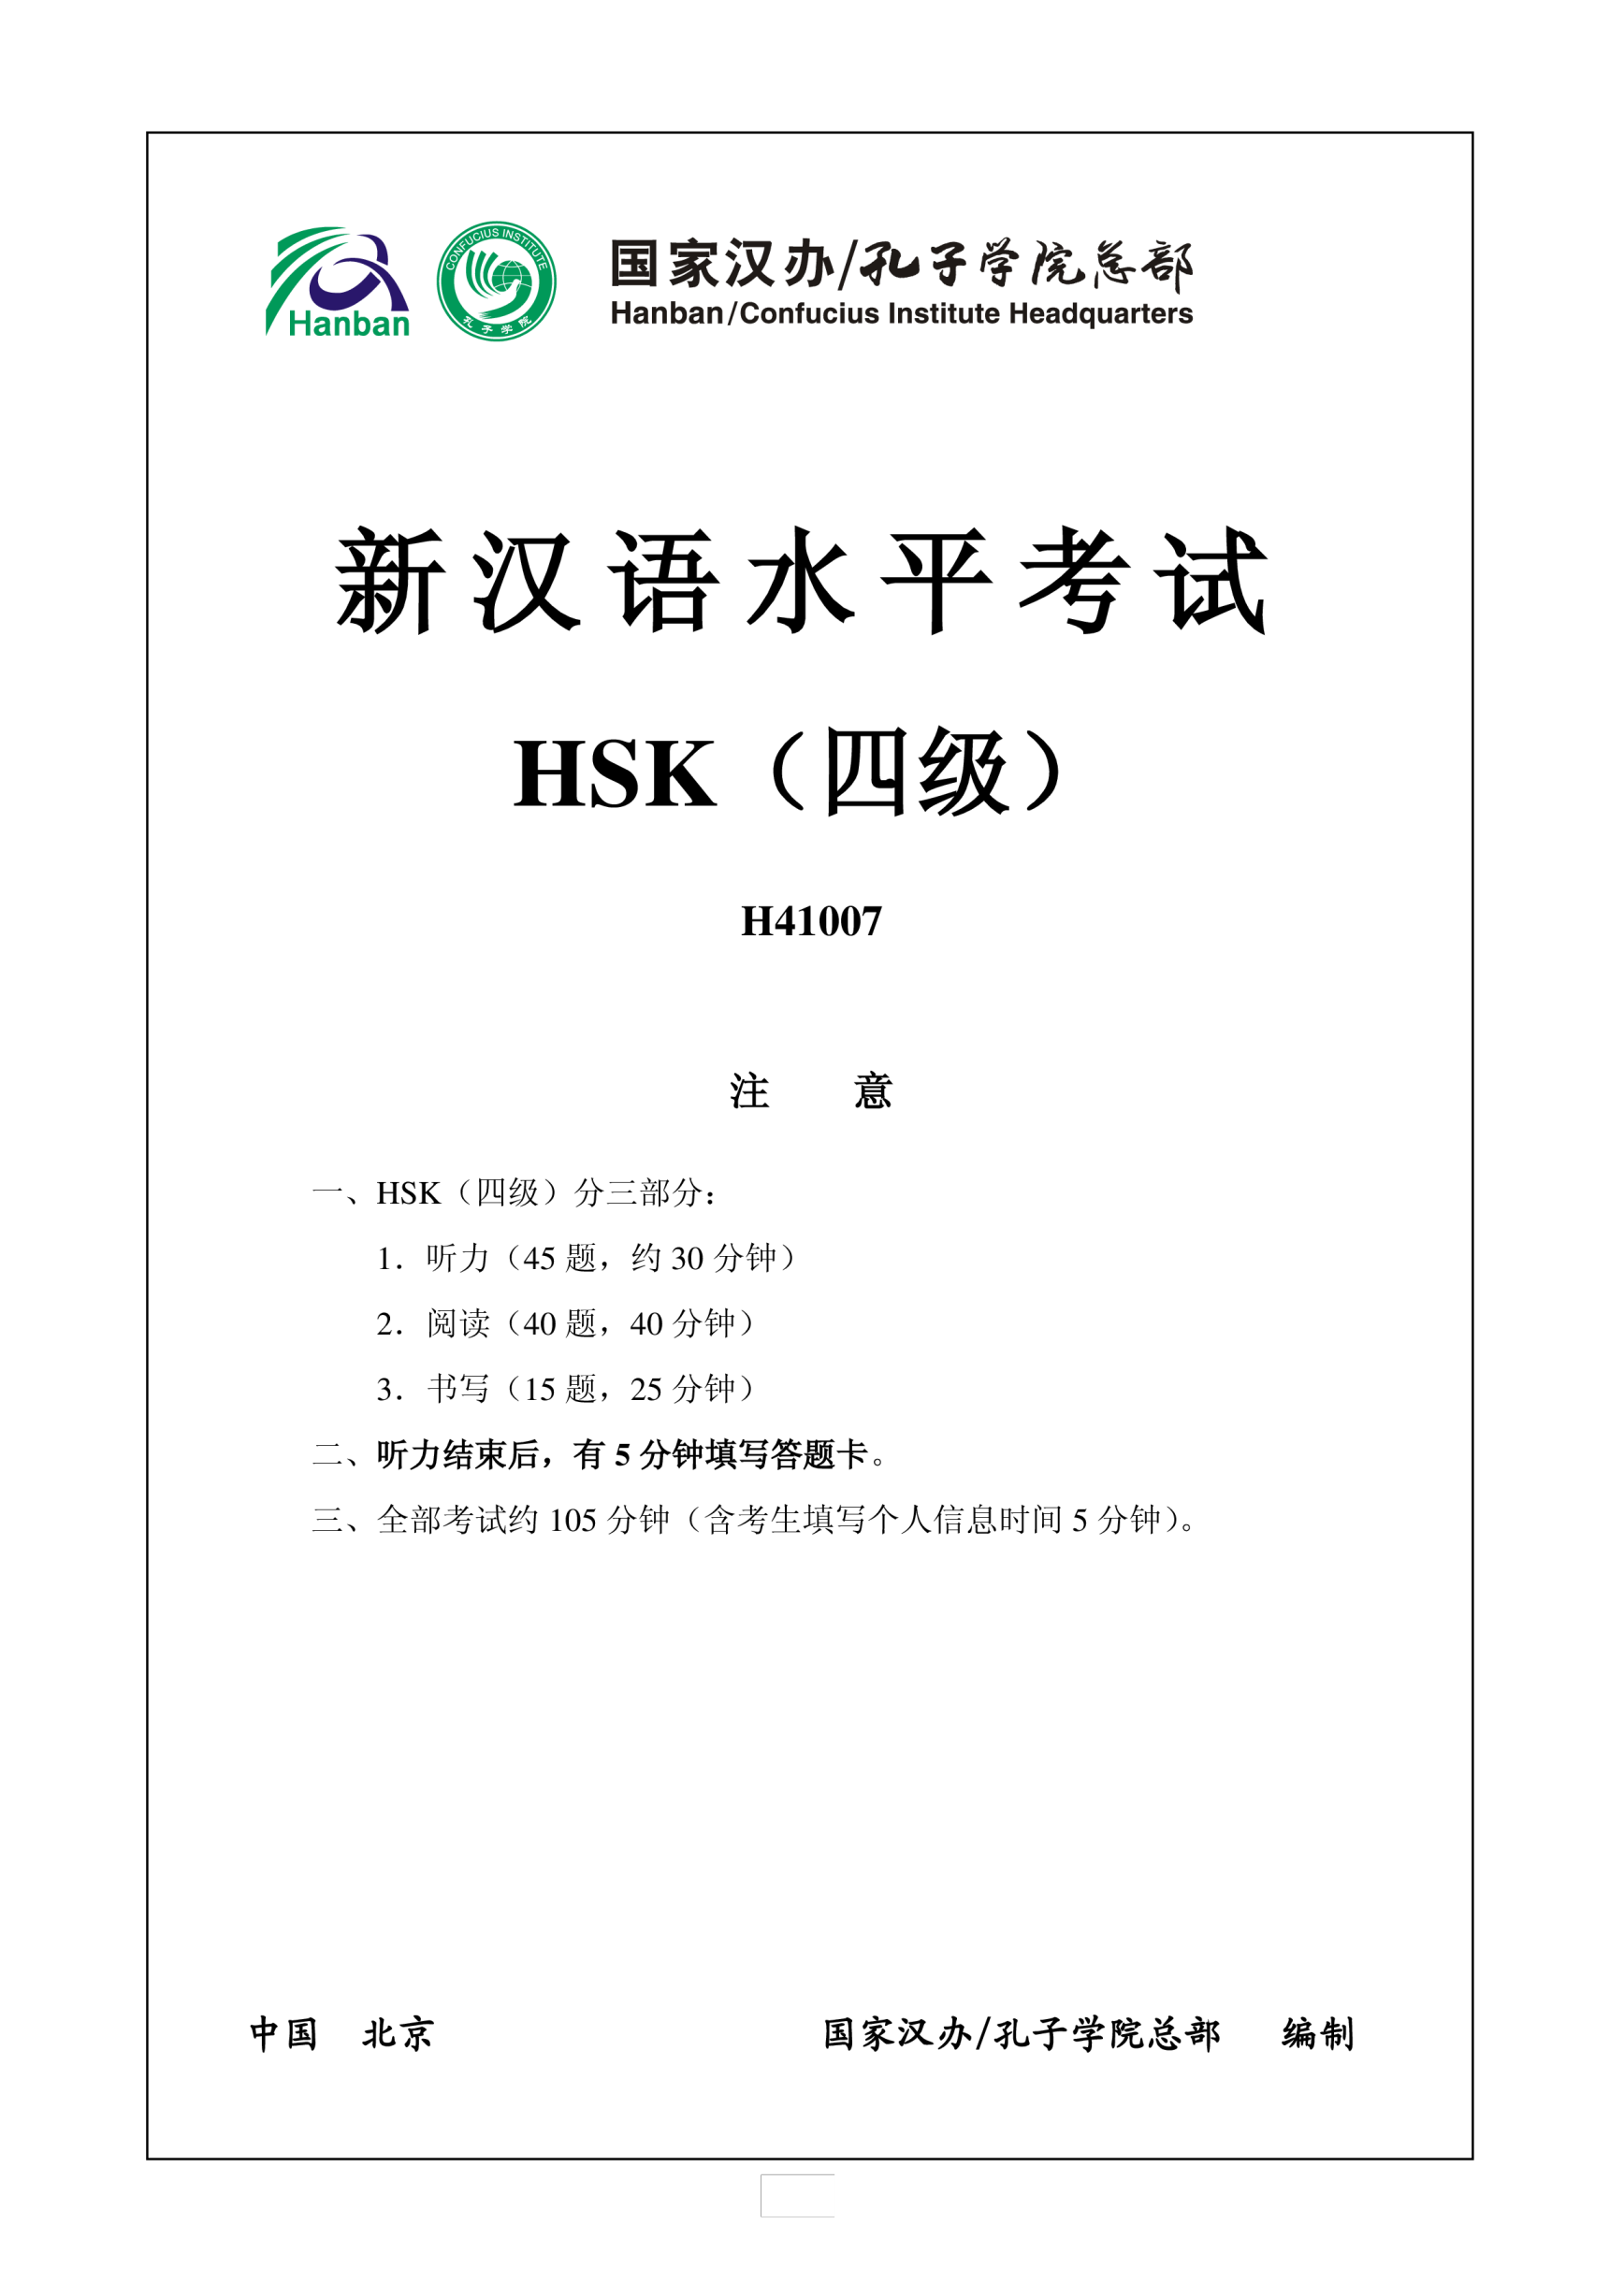 Vorschaubild der Vorlage新汉语水平HSK四级考试H41007模拟真题考试音频和答案